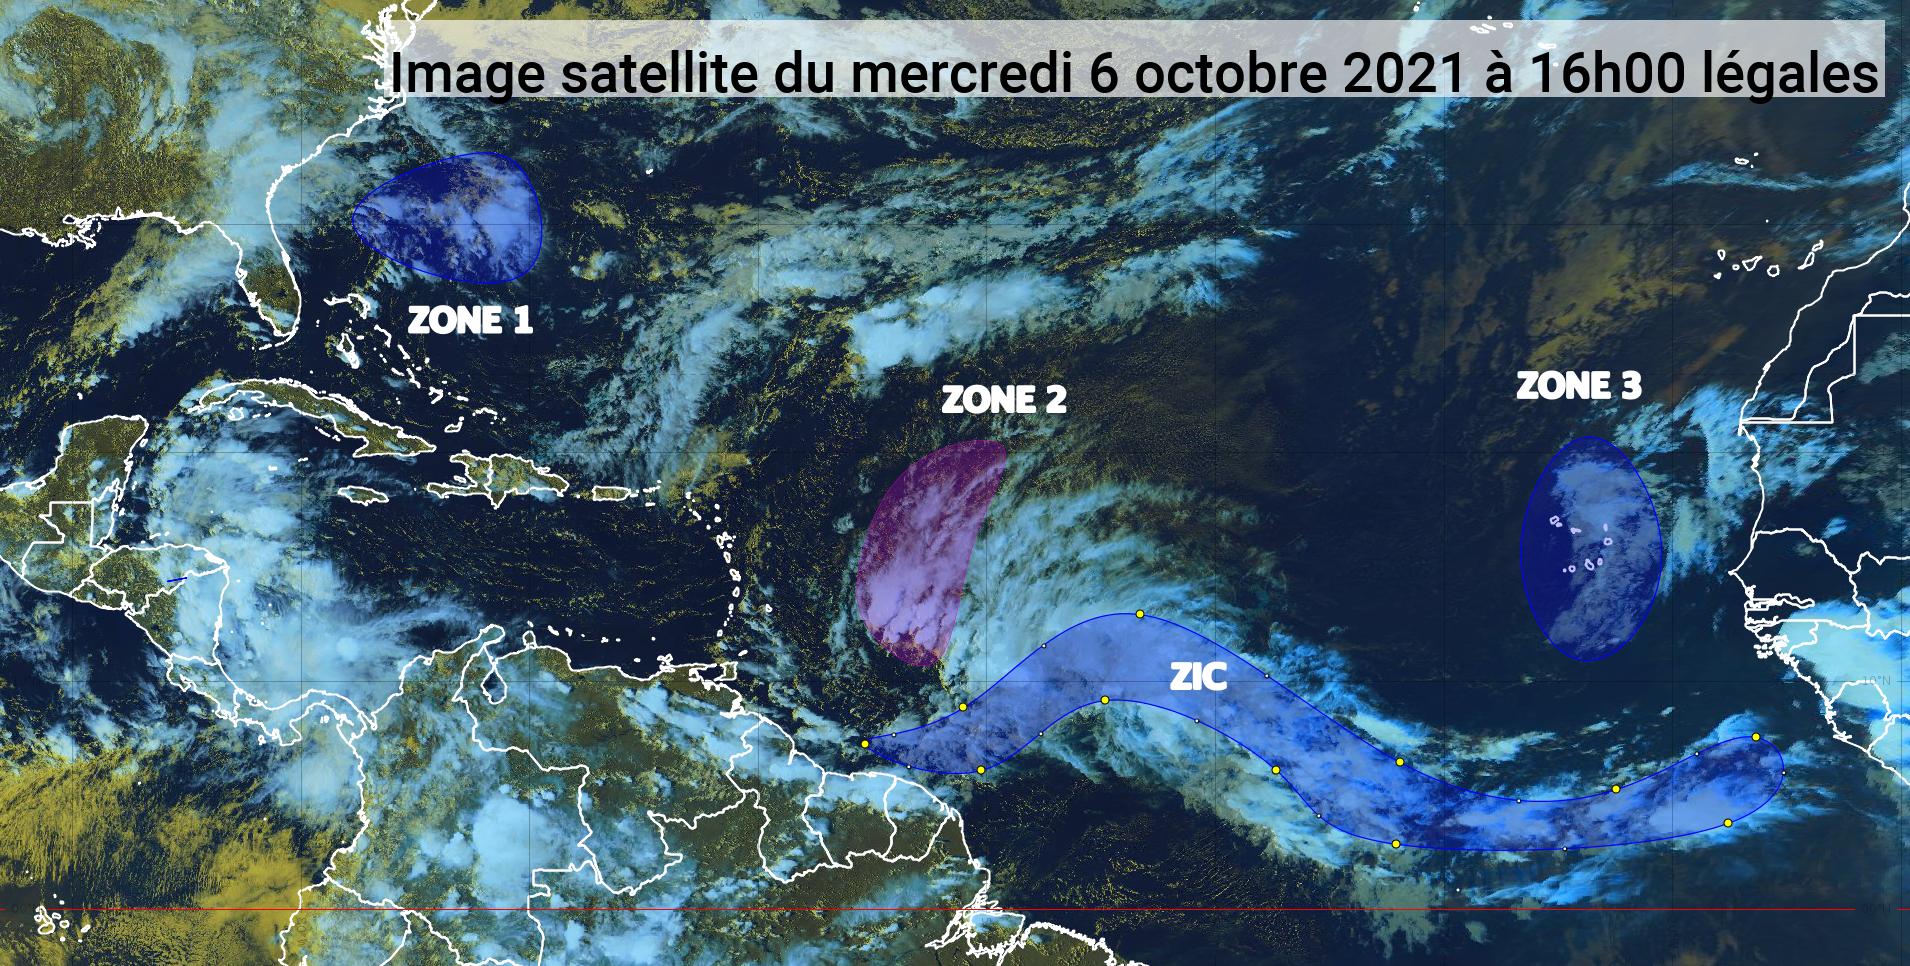     Deux ondes tropicales devraient concerner l'arc antillais (bulletin du 6/10/21)

